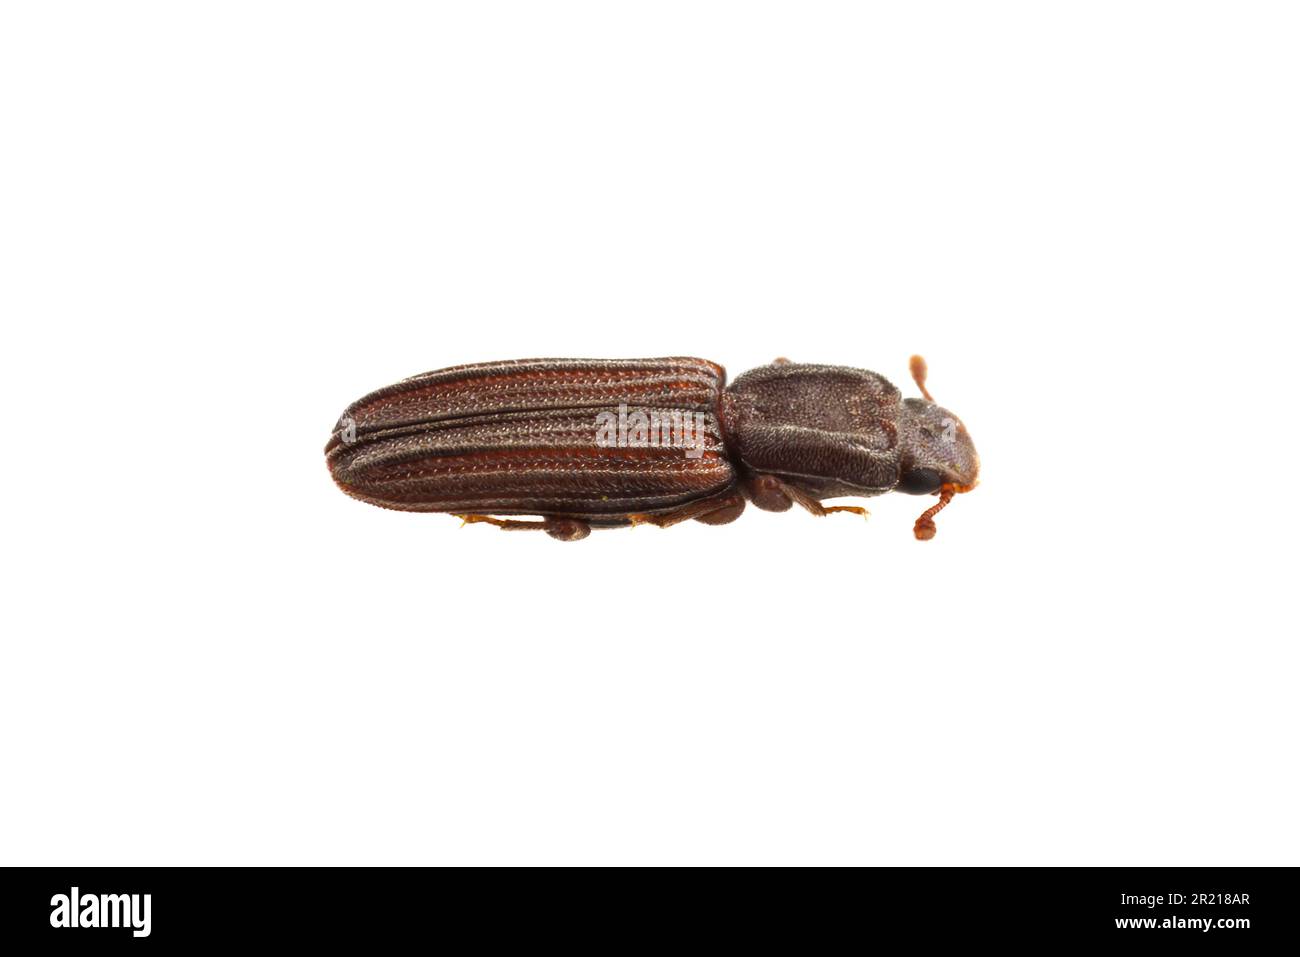 Cylindrical Bark Beetle (Lasconotus pusillus), isolated on white background. Stock Photo